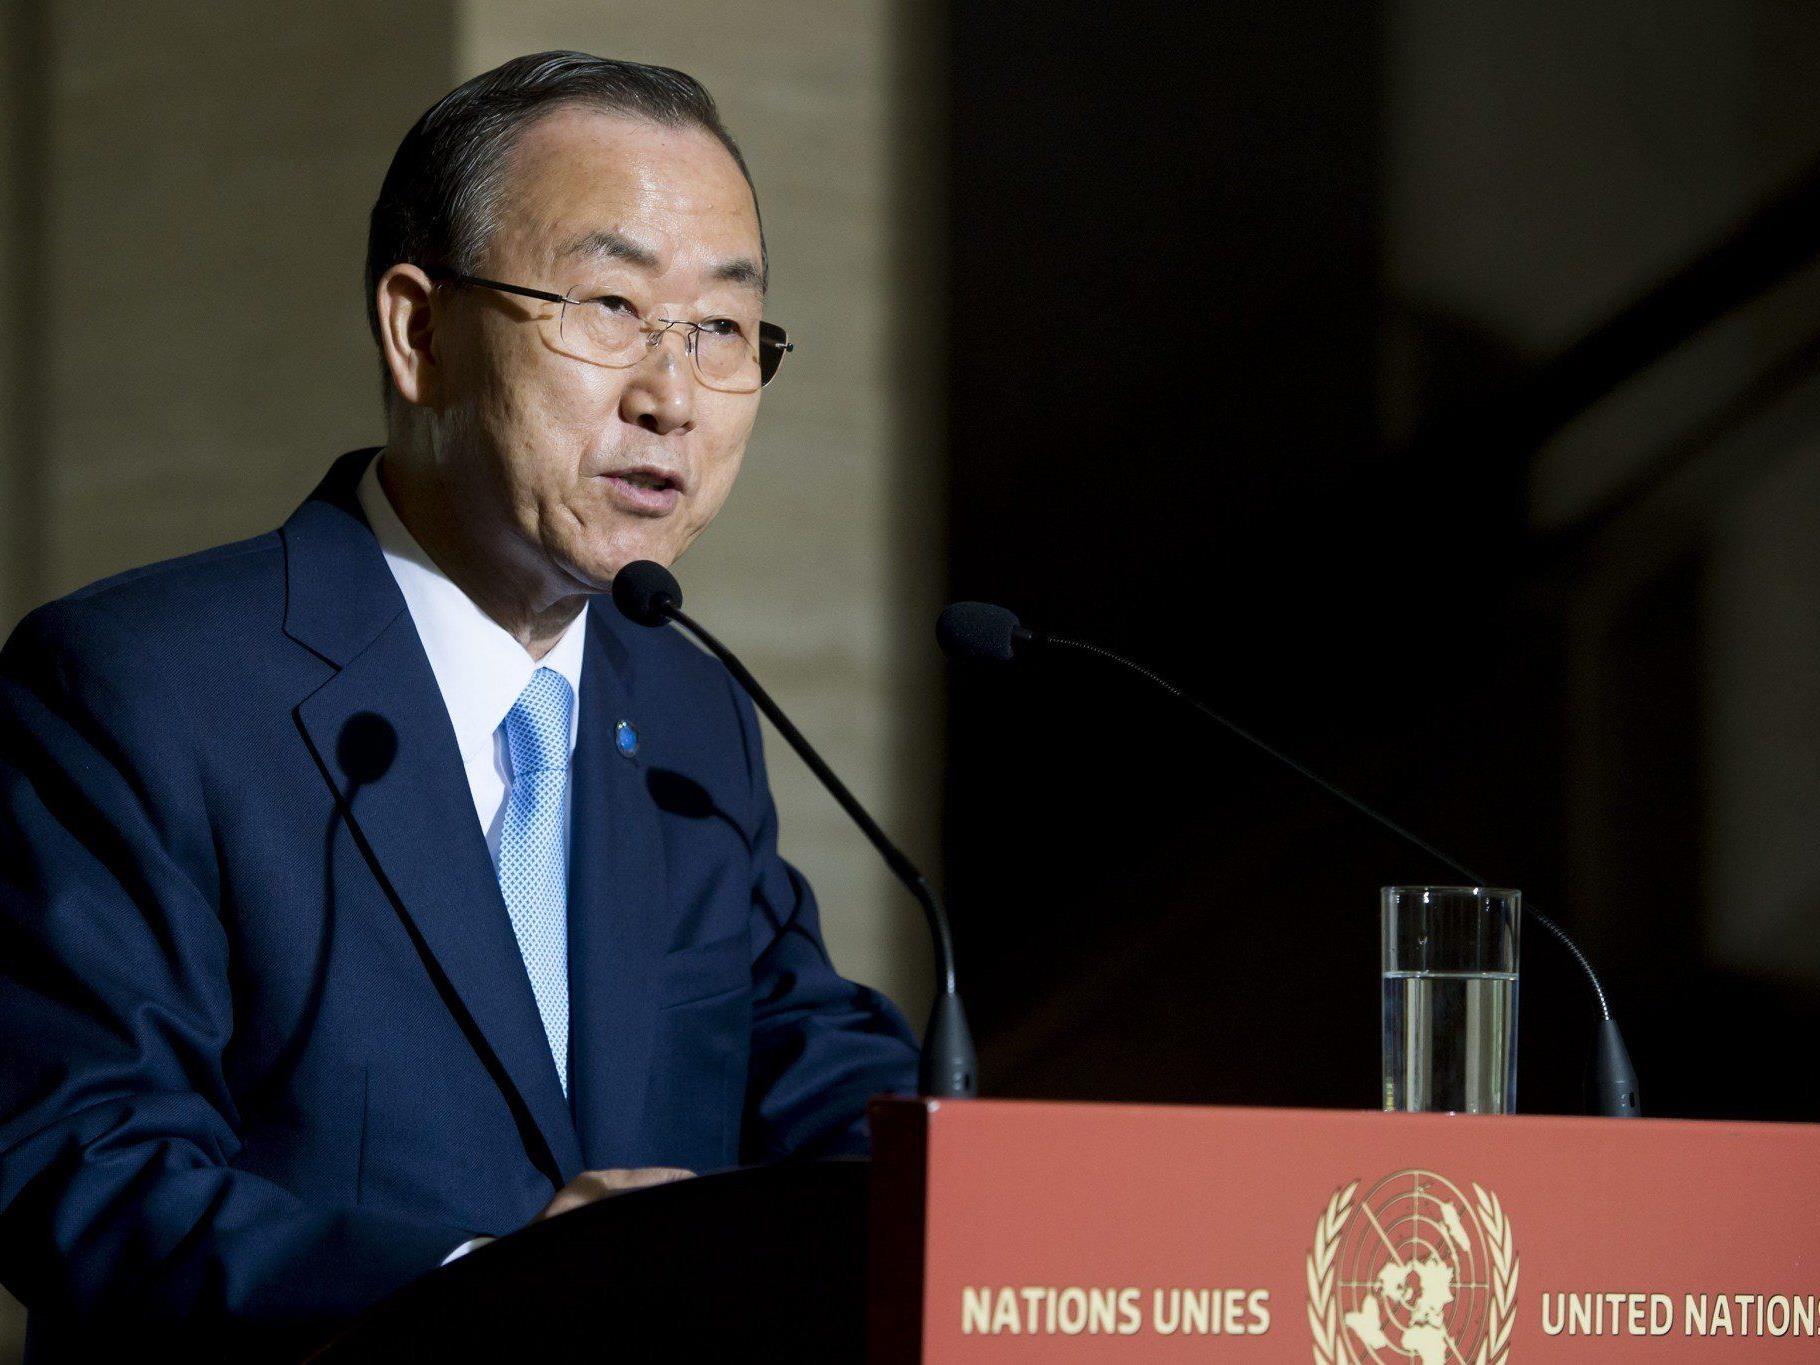 Ban Ki-moon gab bekannt, dass während der Auseinandersetzung in Syrien bisher mehr 100.000 Menschen ums Leben kamen.